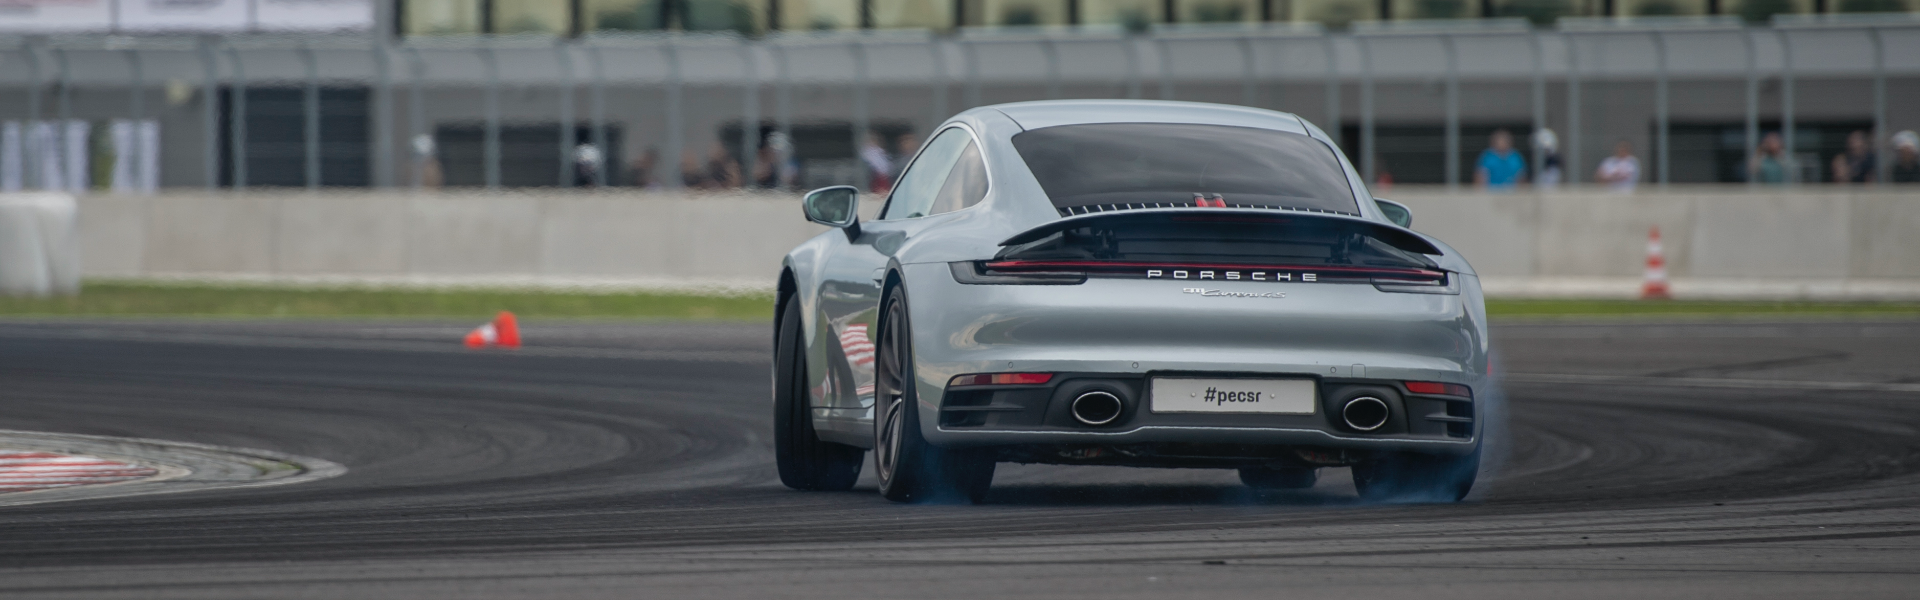 Samochód Porsche na torze wyścigowym